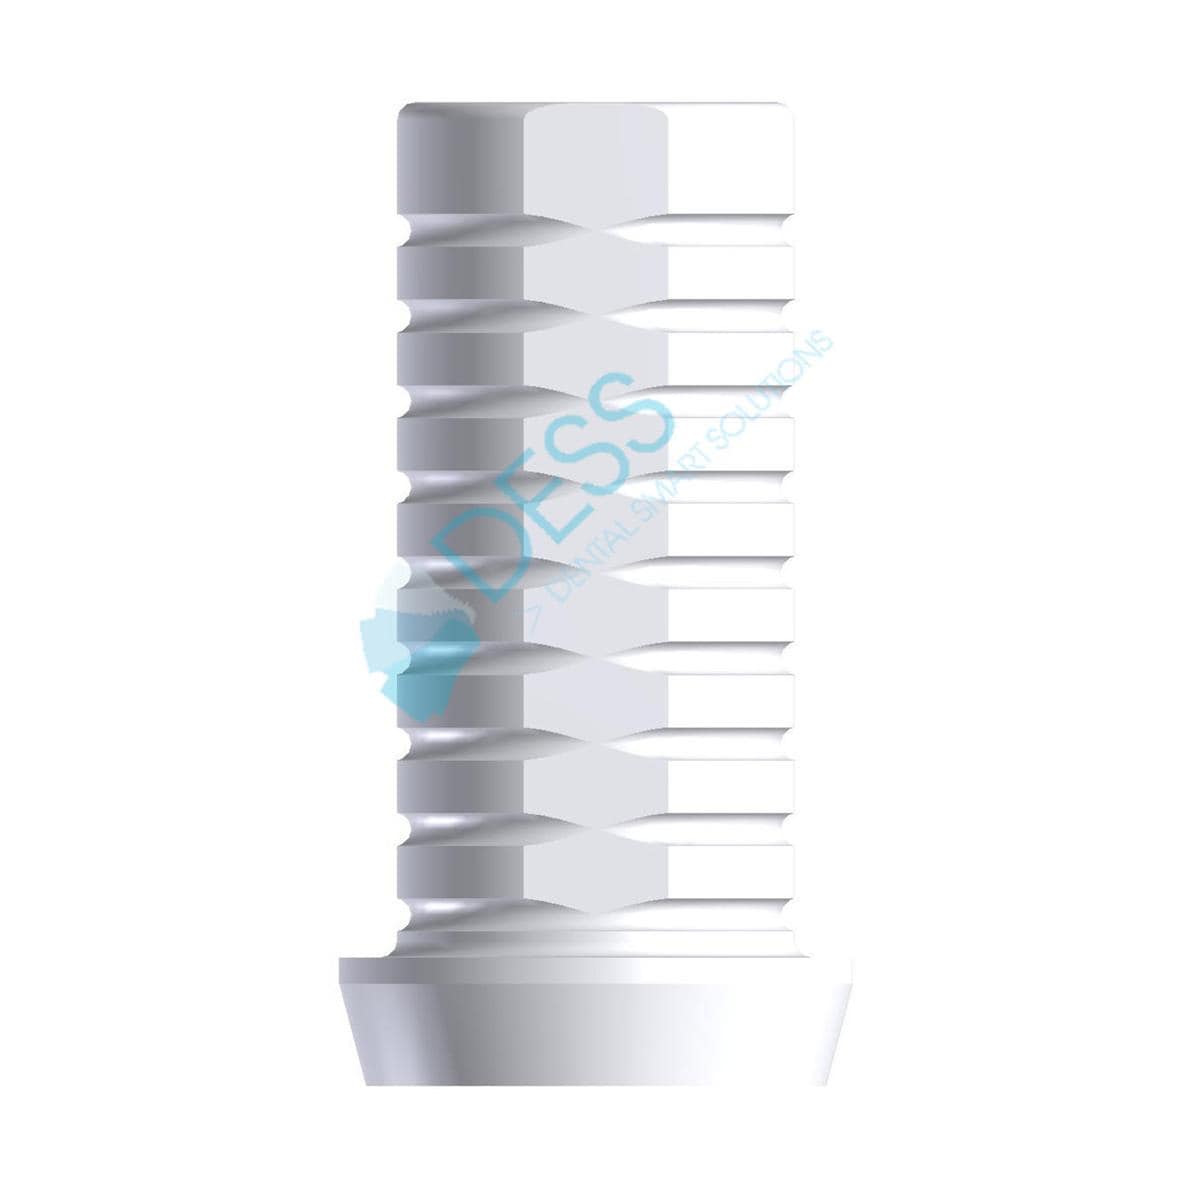 Kunststoffzylinder - kompatibel mit 3i® Osseotite® - NP Ø 5.0 mm, mit Rotationsschutz